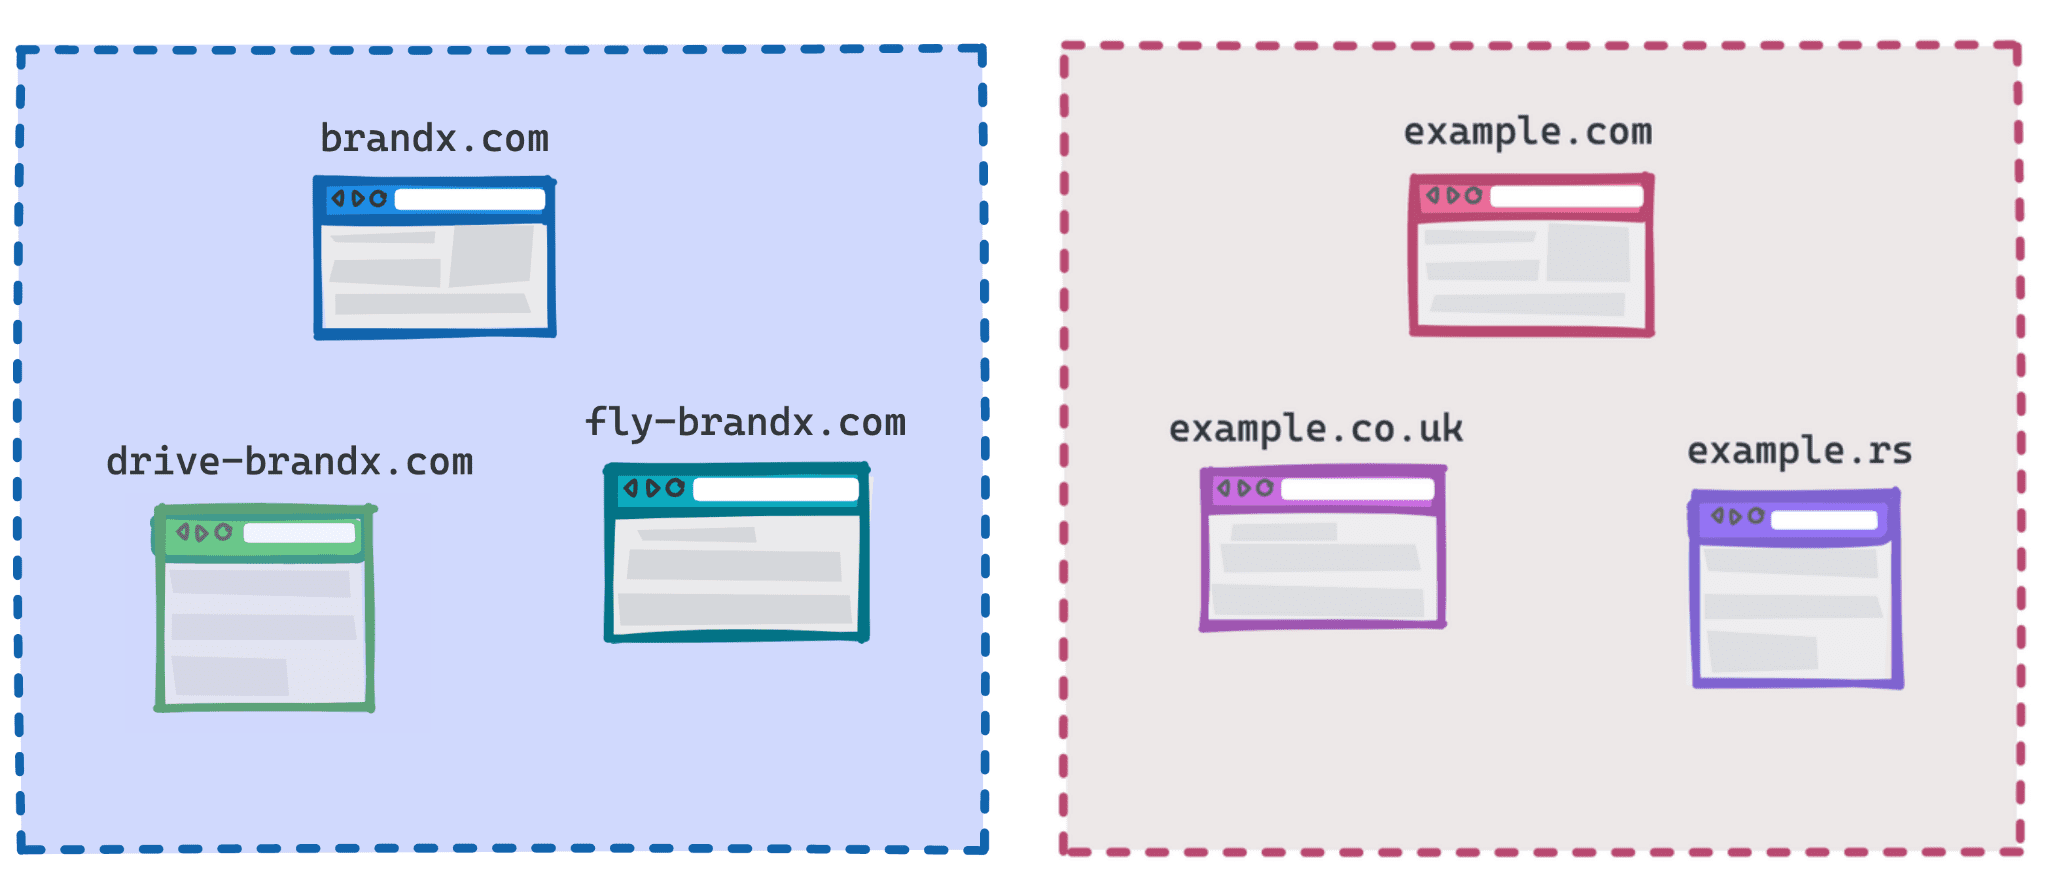 Diagrama en el que se muestra brandx.com, Fly-brandx.com y drive-brandx.com como un grupo, y example.com, example.rs y example.co.uk como otro grupo.